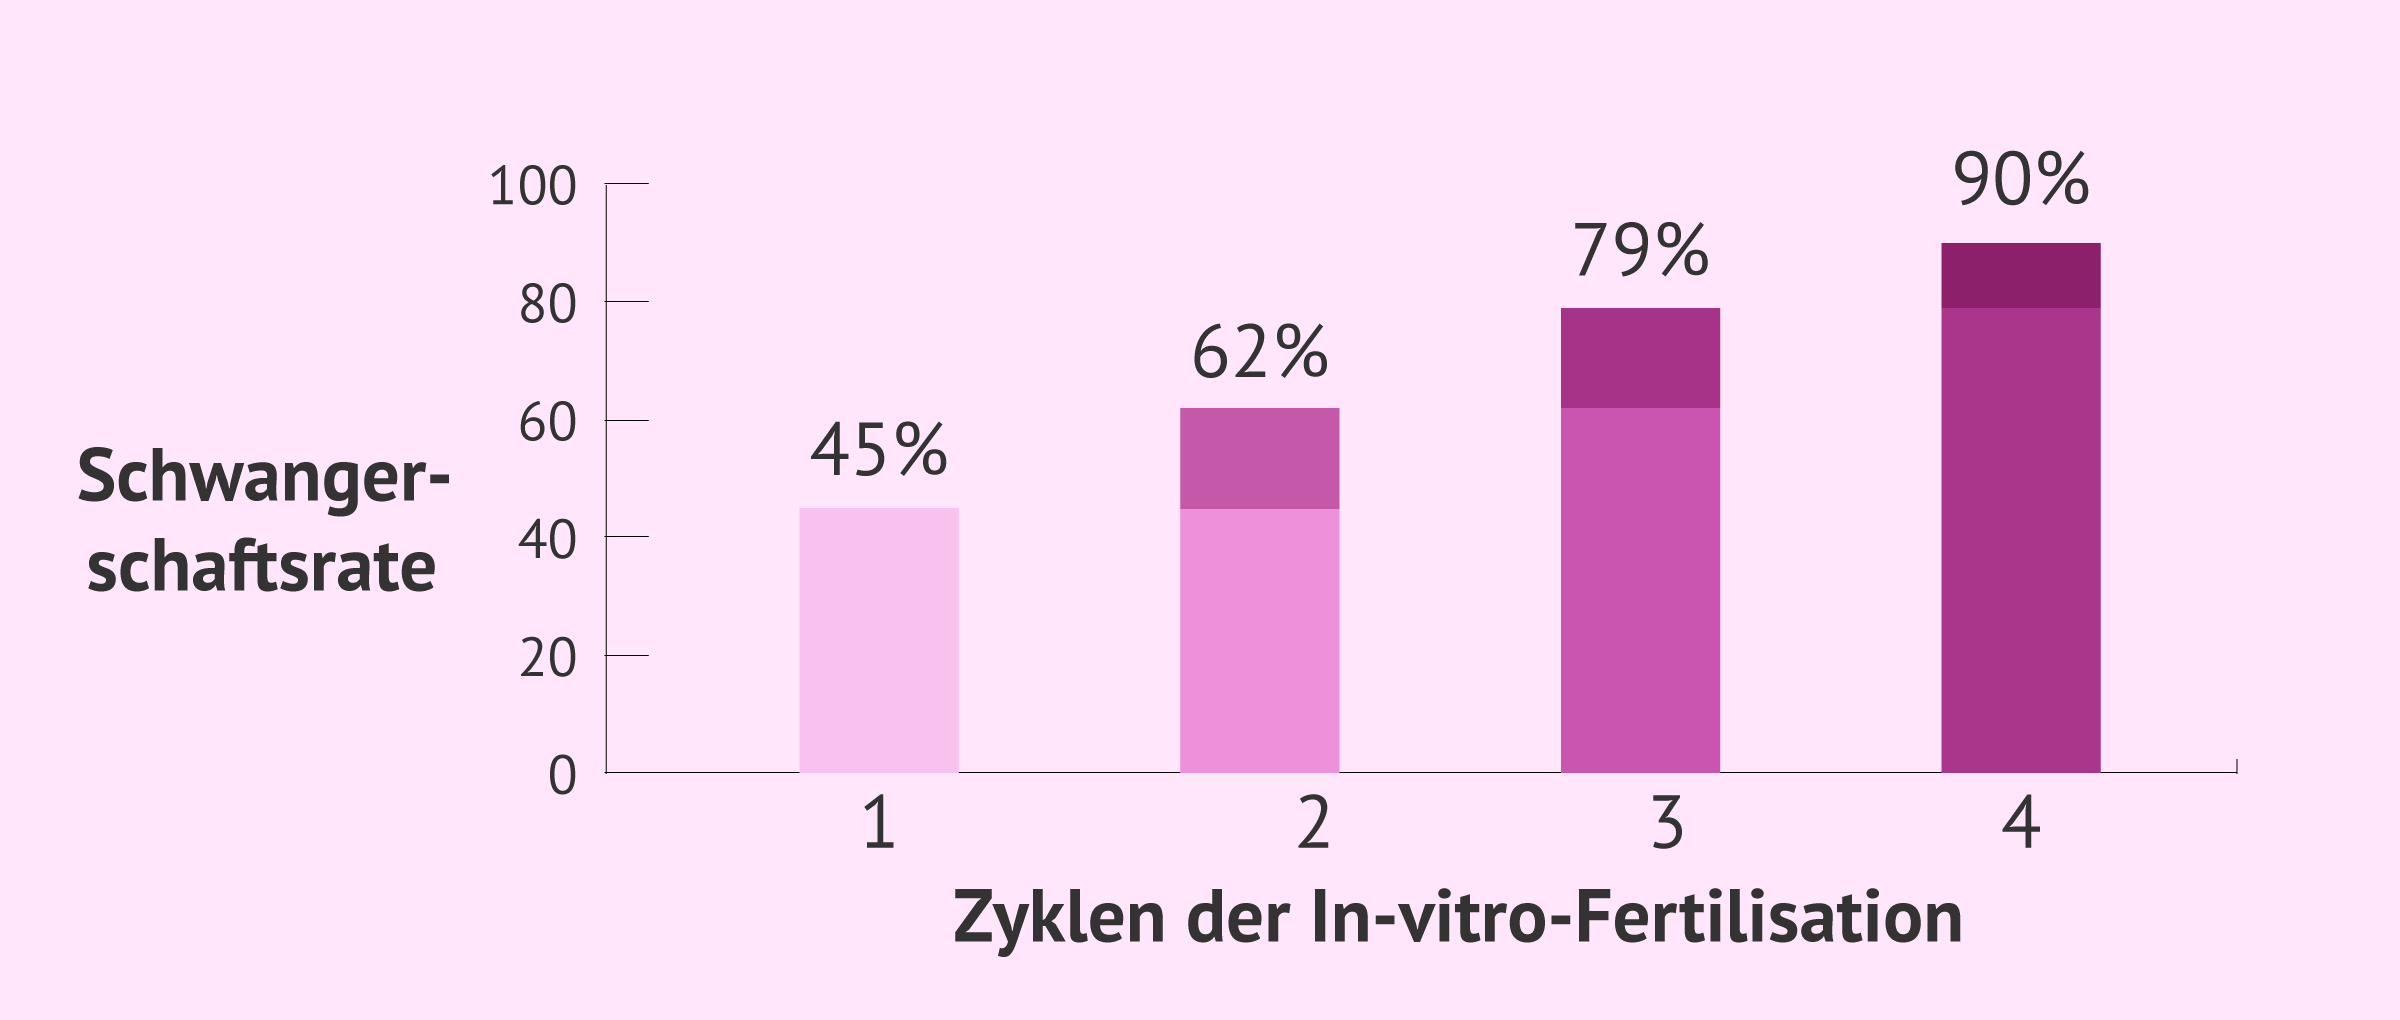 Kumulative Schwangerschaftsrate bei der In-vitro-Fertilisation (IVF)